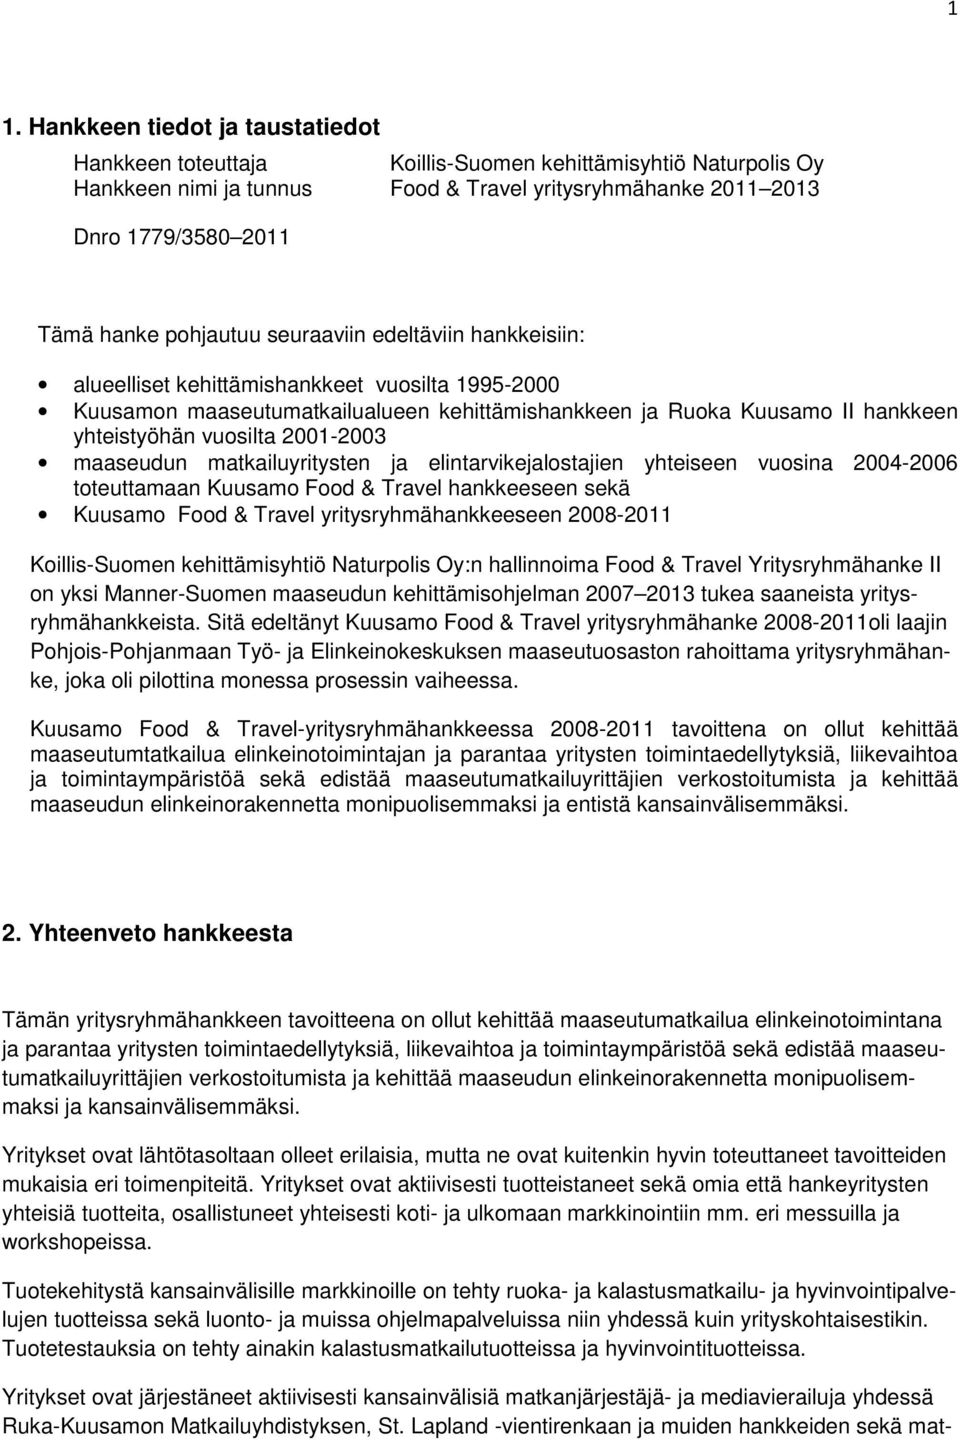 2001-2003 maaseudun matkailuyritysten ja elintarvikejalostajien yhteiseen vuosina 2004-2006 toteuttamaan Kuusamo Food & Travel hankkeeseen sekä Kuusamo Food & Travel yritysryhmähankkeeseen 2008-2011